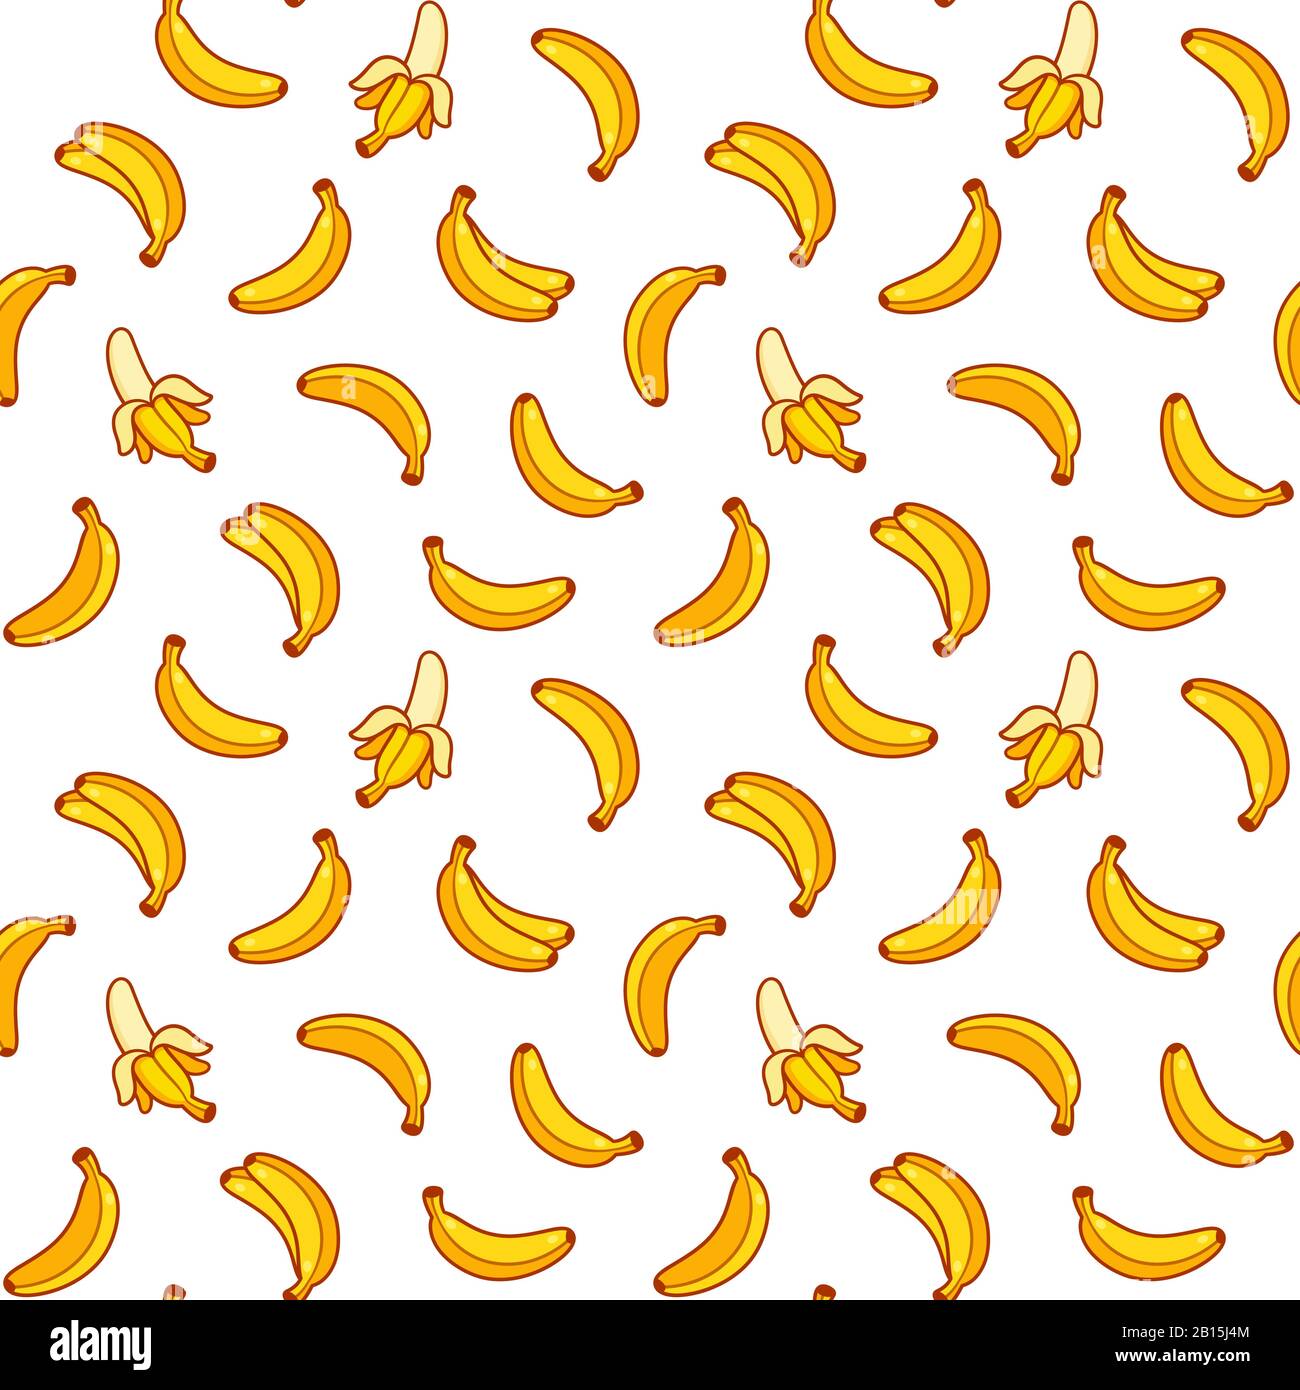 Cartoon Banane nahtloses Muster. Helle handgezeichnete gelbe Bananen auf weißem Hintergrund. Vektorclip Art Illustration Kollektion. Stock Vektor